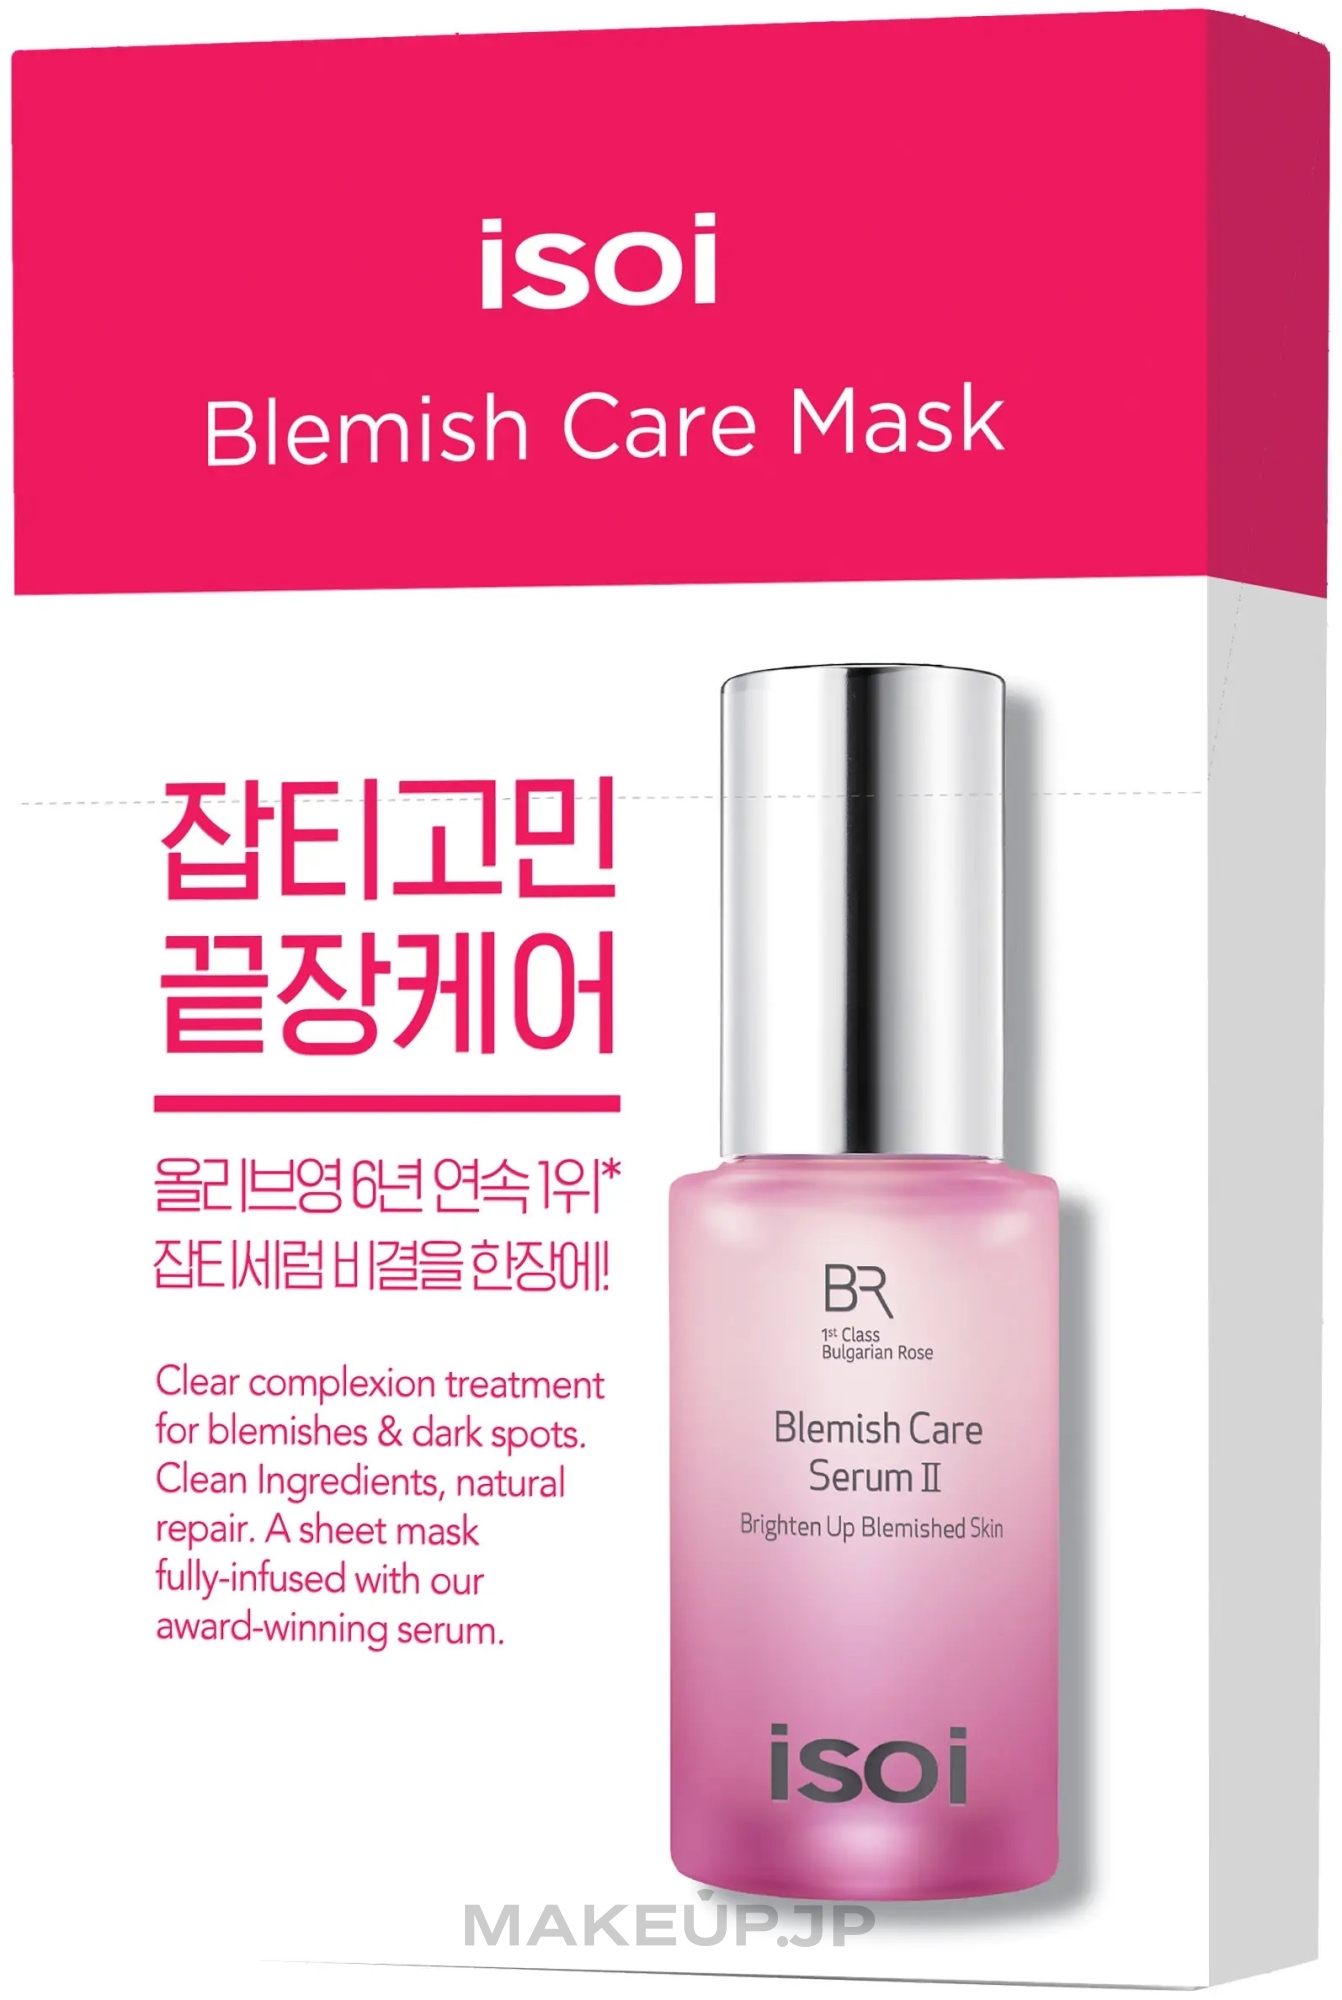 Moisturizing Whitening Face Mask - Isoi Bulgarian Rose Blemish Care Mask — photo 10 x 20 ml